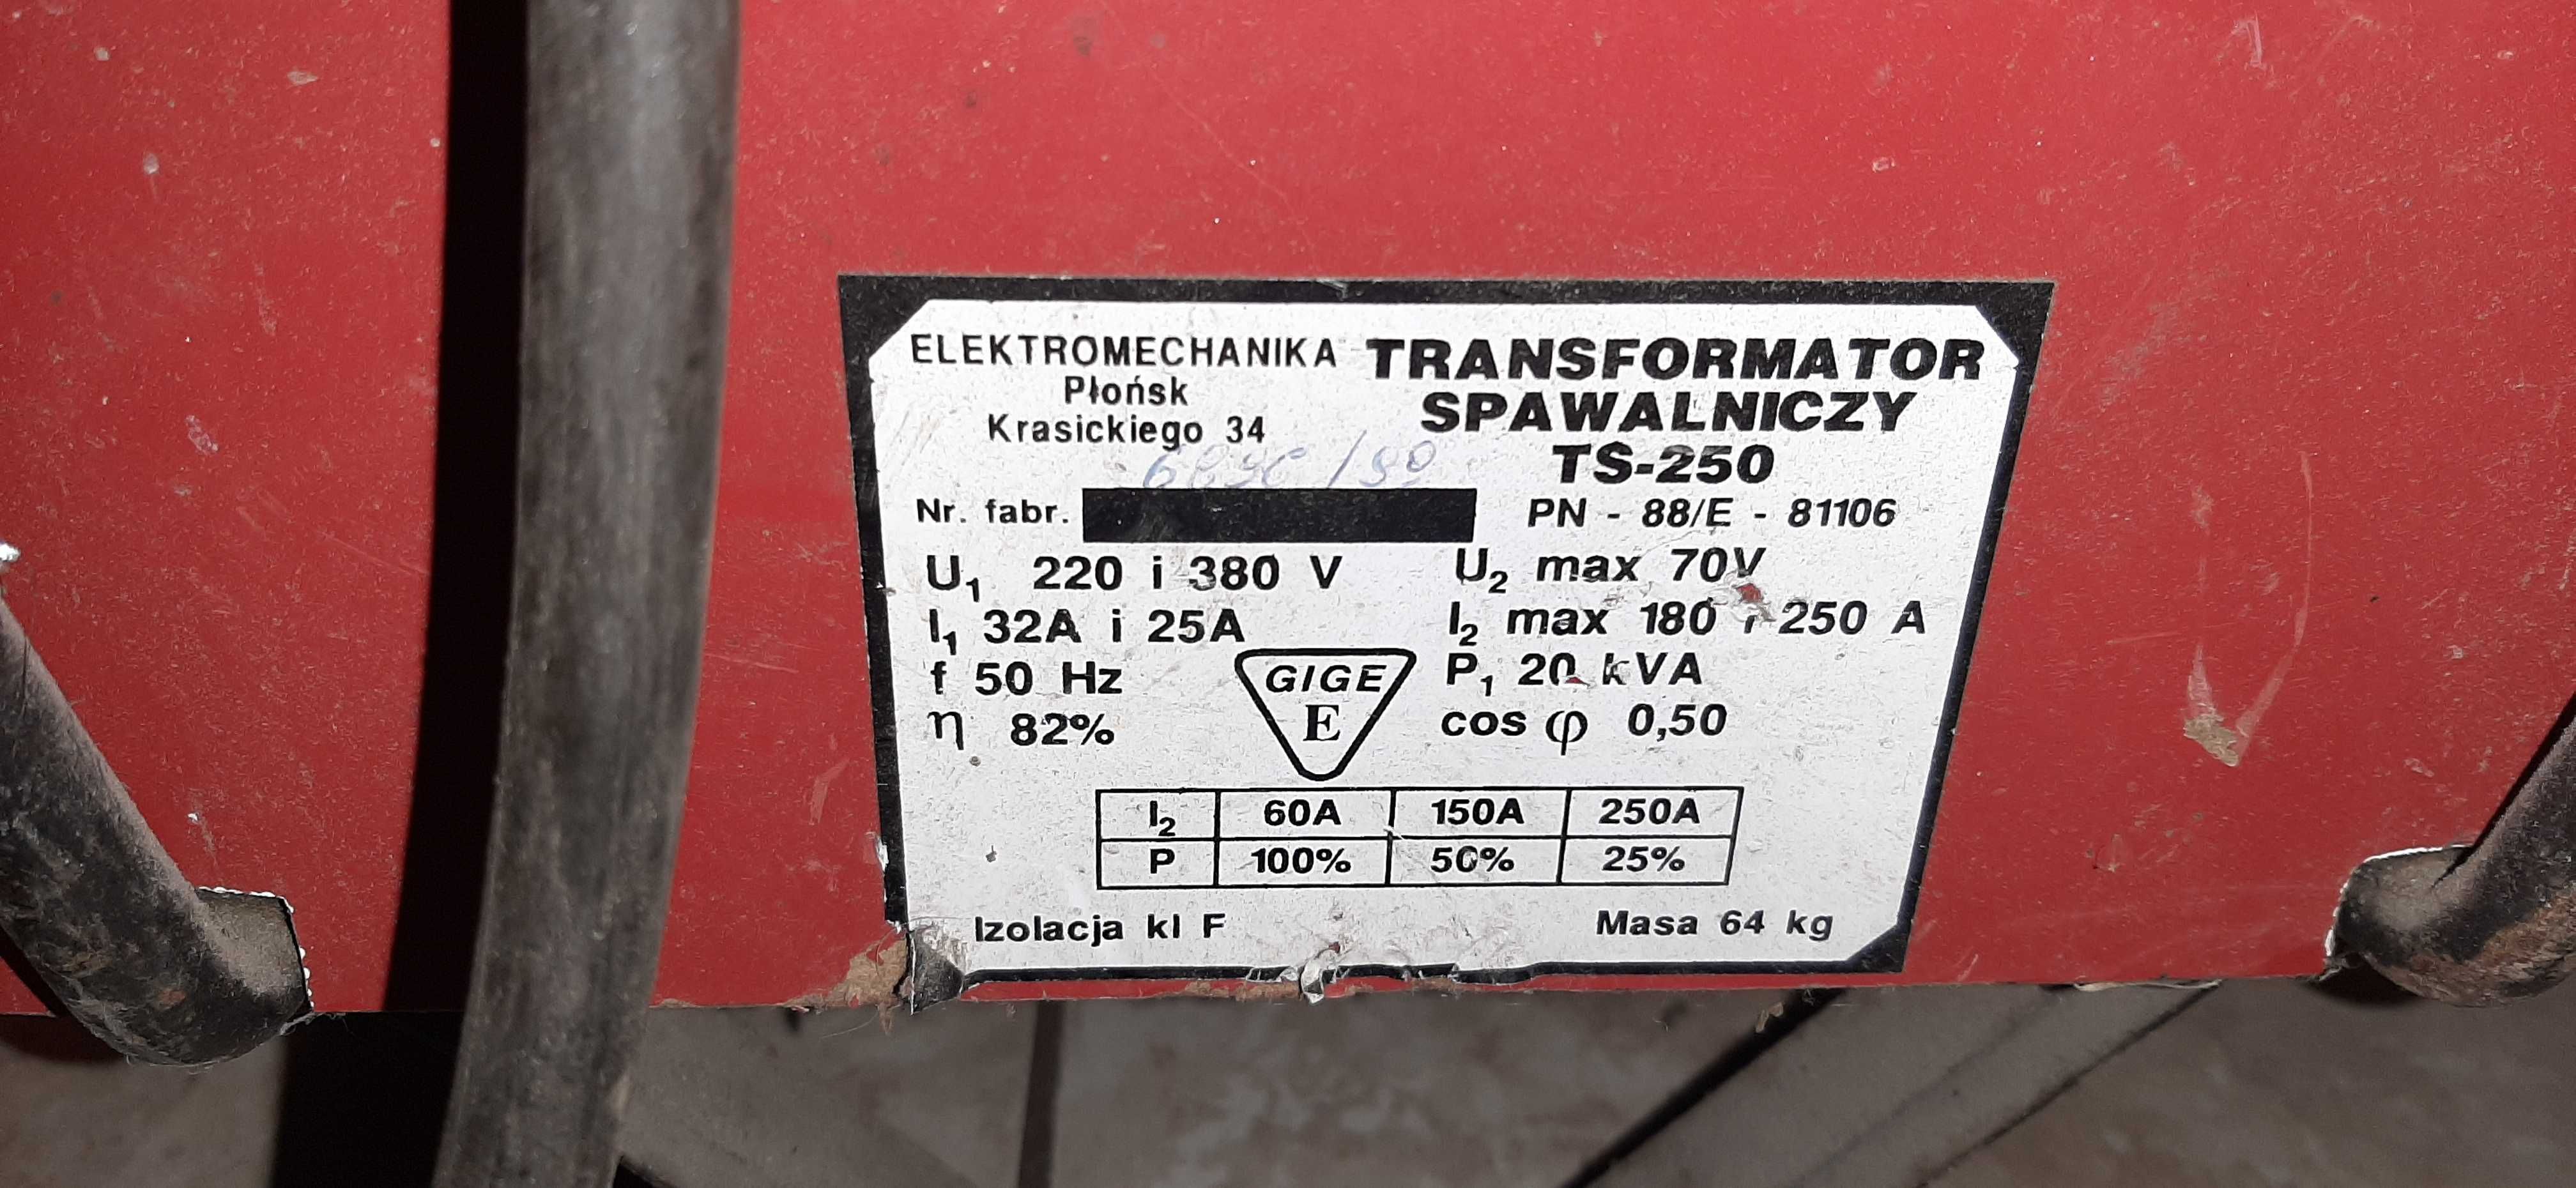 Spawarka transformatorowa TS-250 zwojona miedzią